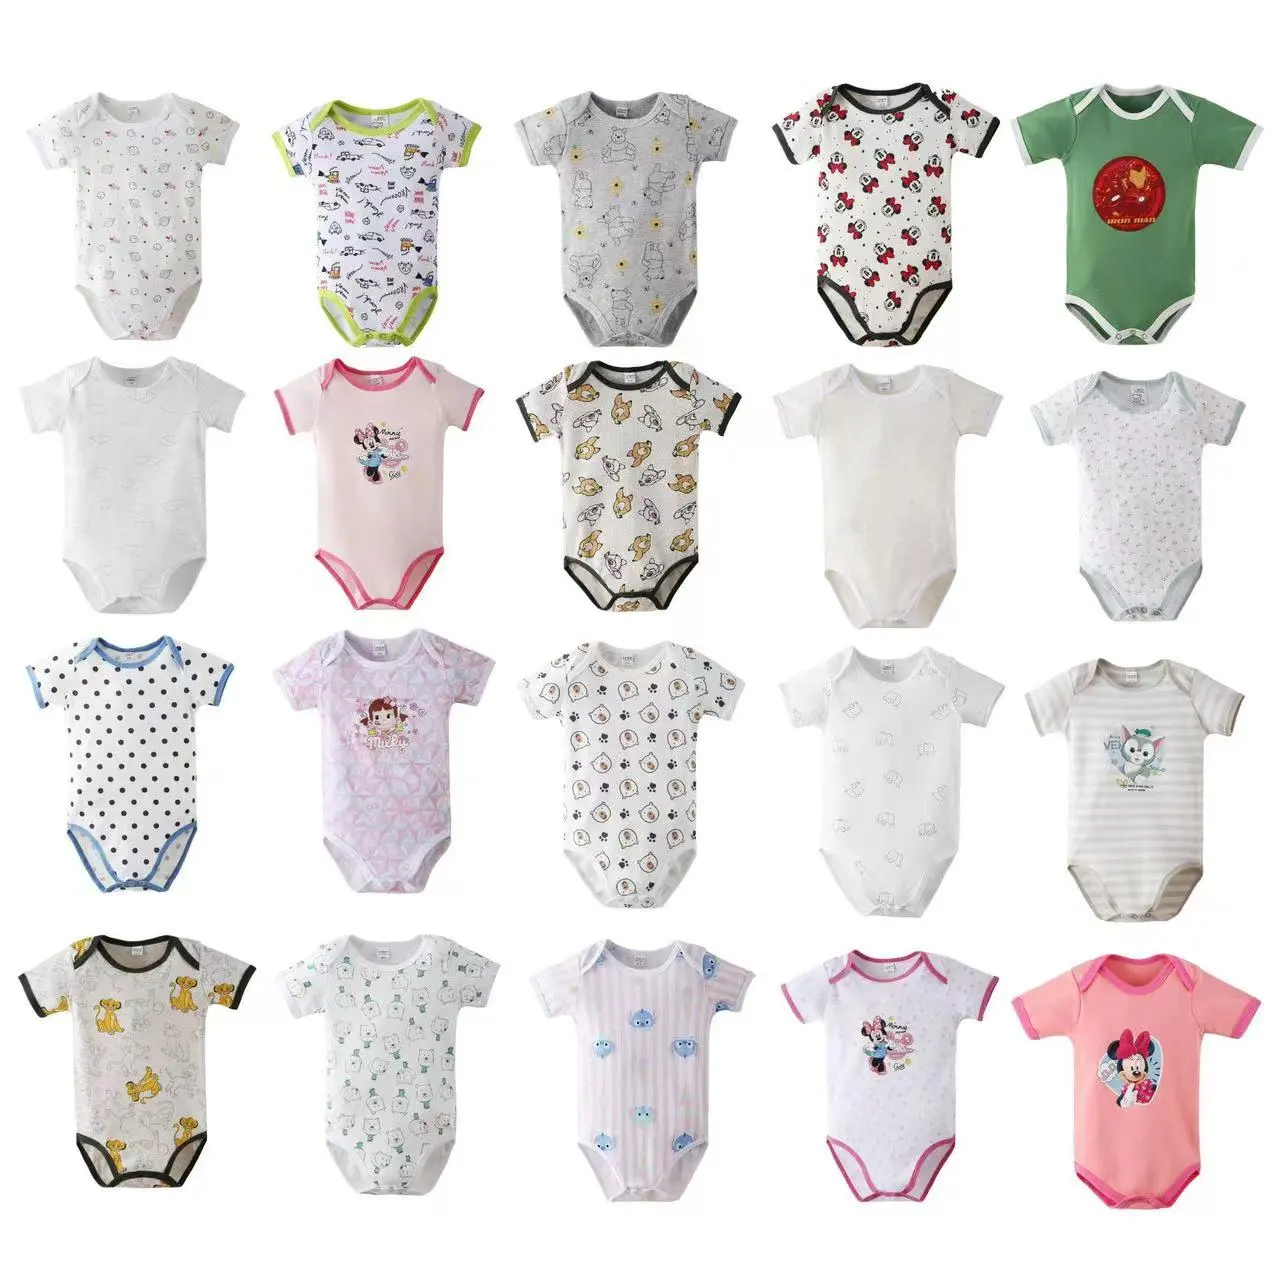 โรงงานขายส่งผ้าฝ้ายทารกแรกเกิดทารกบอดี้สูทเสื้อผ้าเด็กชายและเด็กหญิงทารกRomper Onesieเสื้อผ้า